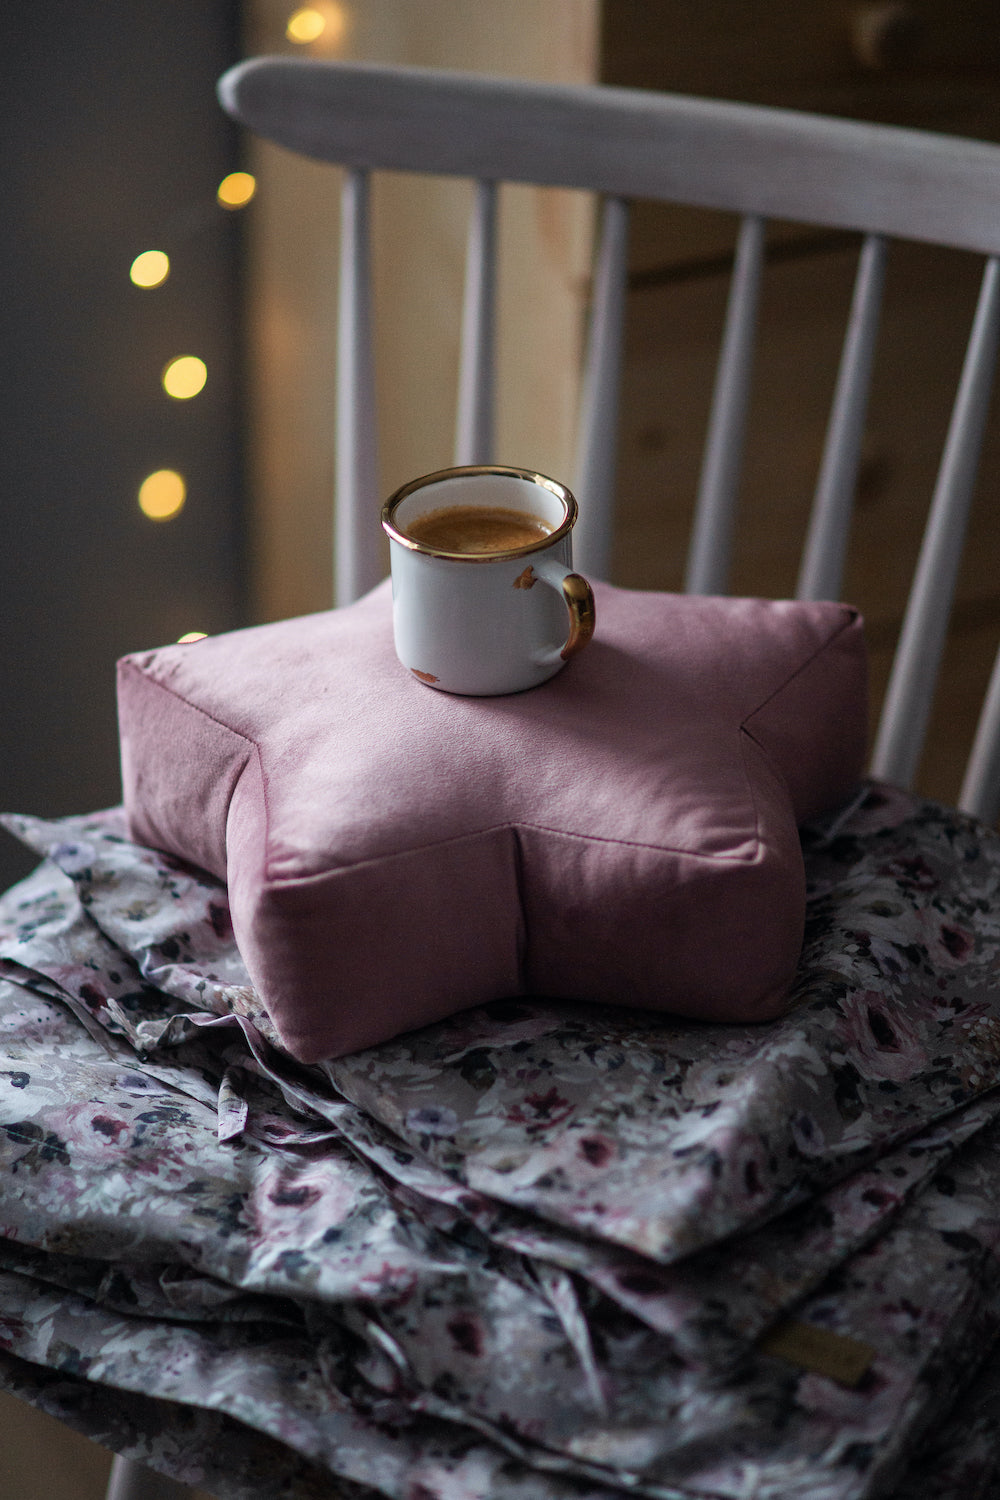 mała poduszka gwiazdka welurowa w kolorze różowym na której stoi kubek z kawą. Gwiazdka leży na krześle. dekoracje pokoju